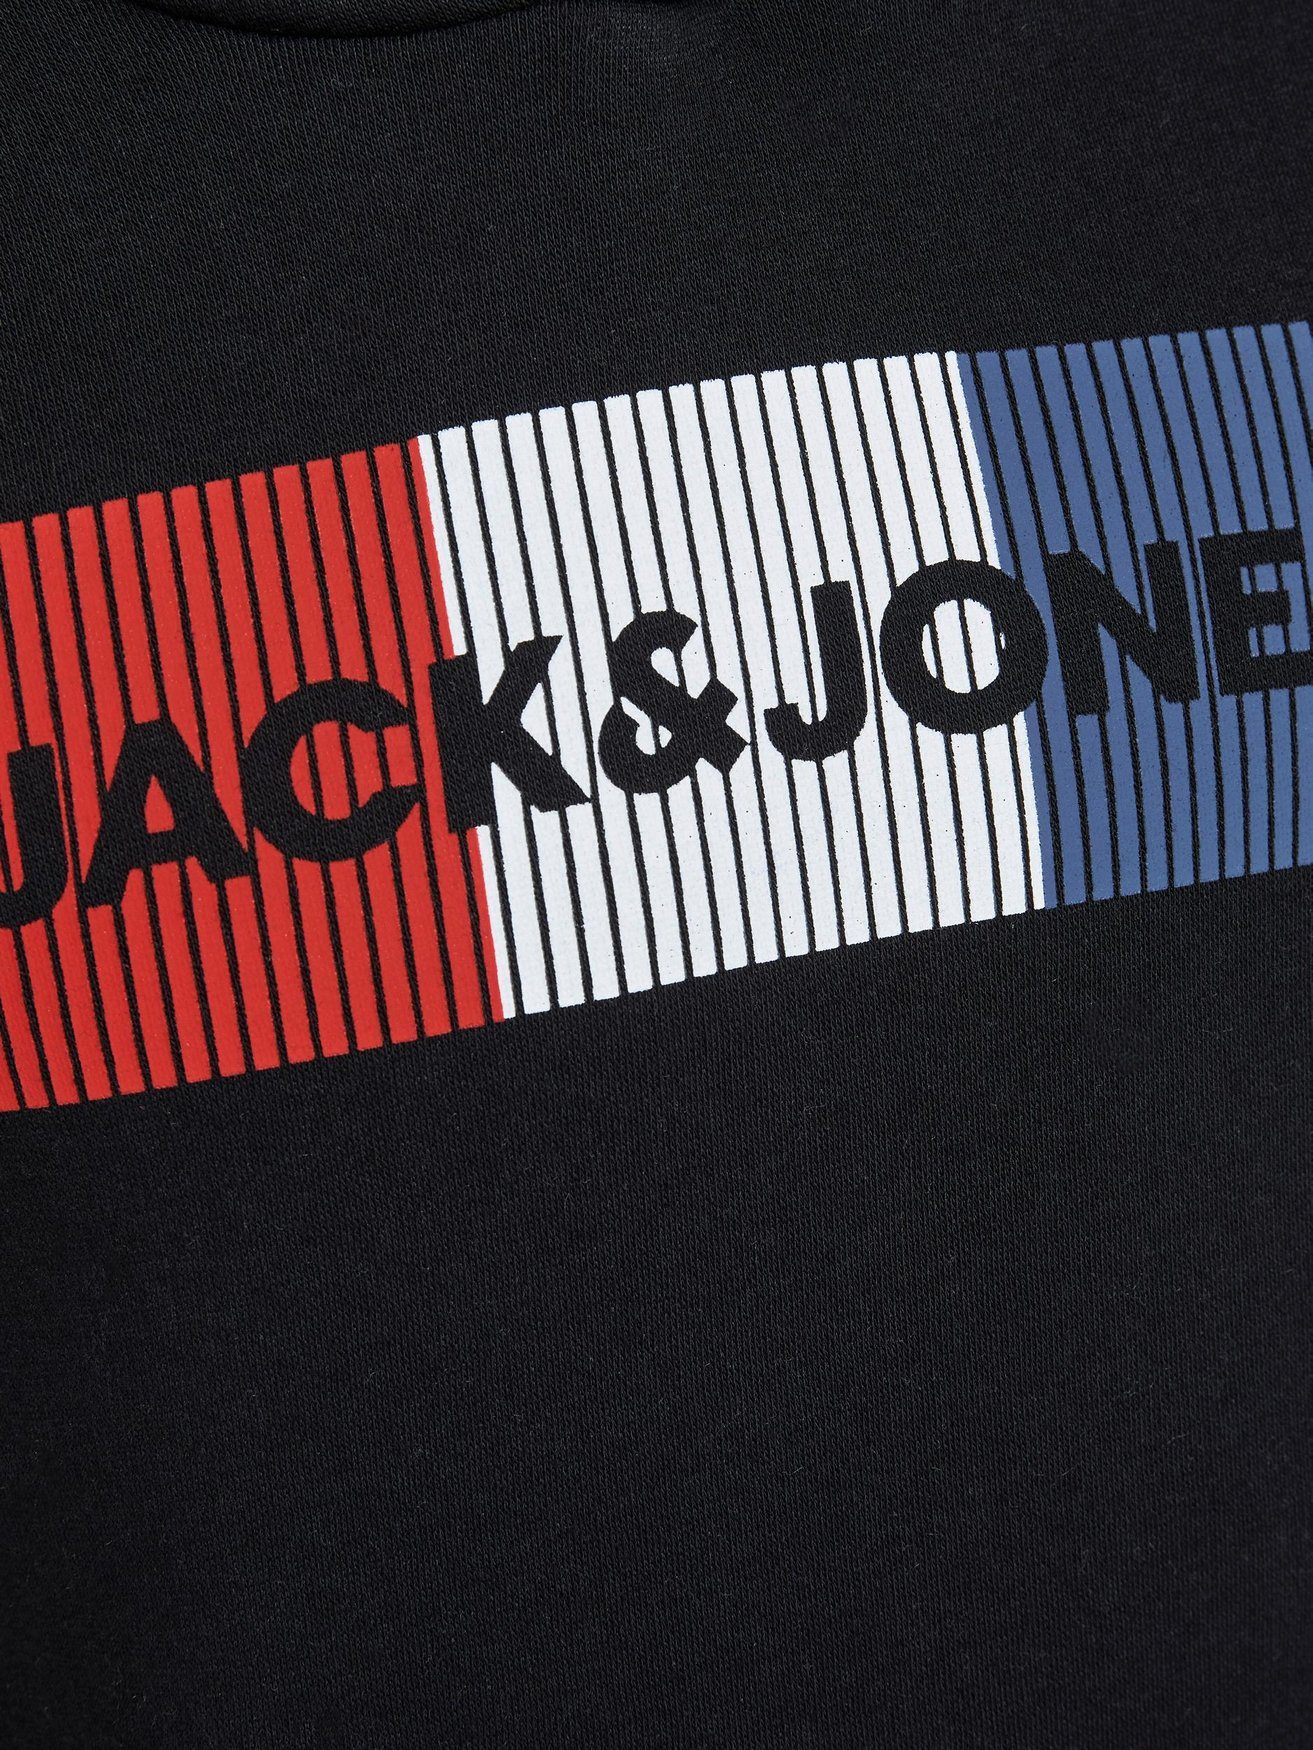 Jones & JJECORP Kapuzen Logo 6502 Pullover Jack Schwarz Hoodie in Hoodie Sweater